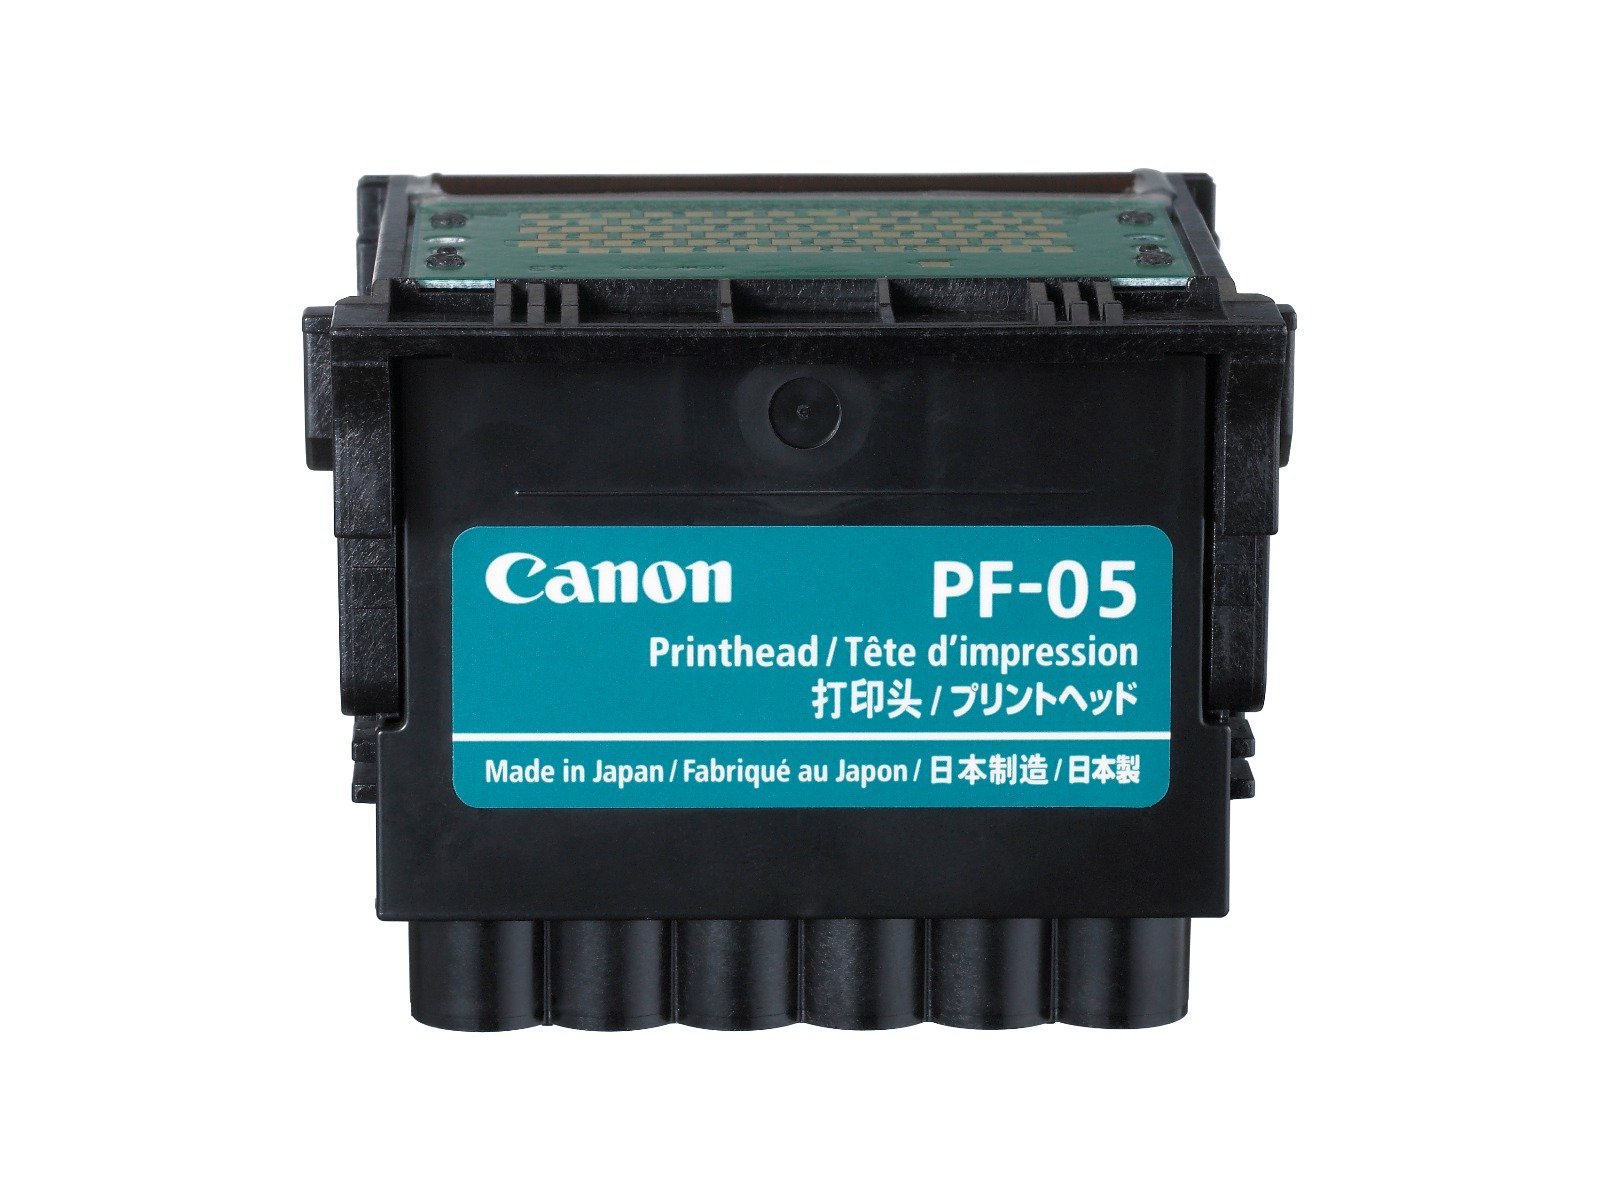 Печатающая головка Canon PF-05 печатающая головка qy6 0082 печатающая головка для принтера canon ip7200 ip7210 ip7220 ip7230 ip7240 ip7250 ip7260 ip7280 mg5680 mg5720